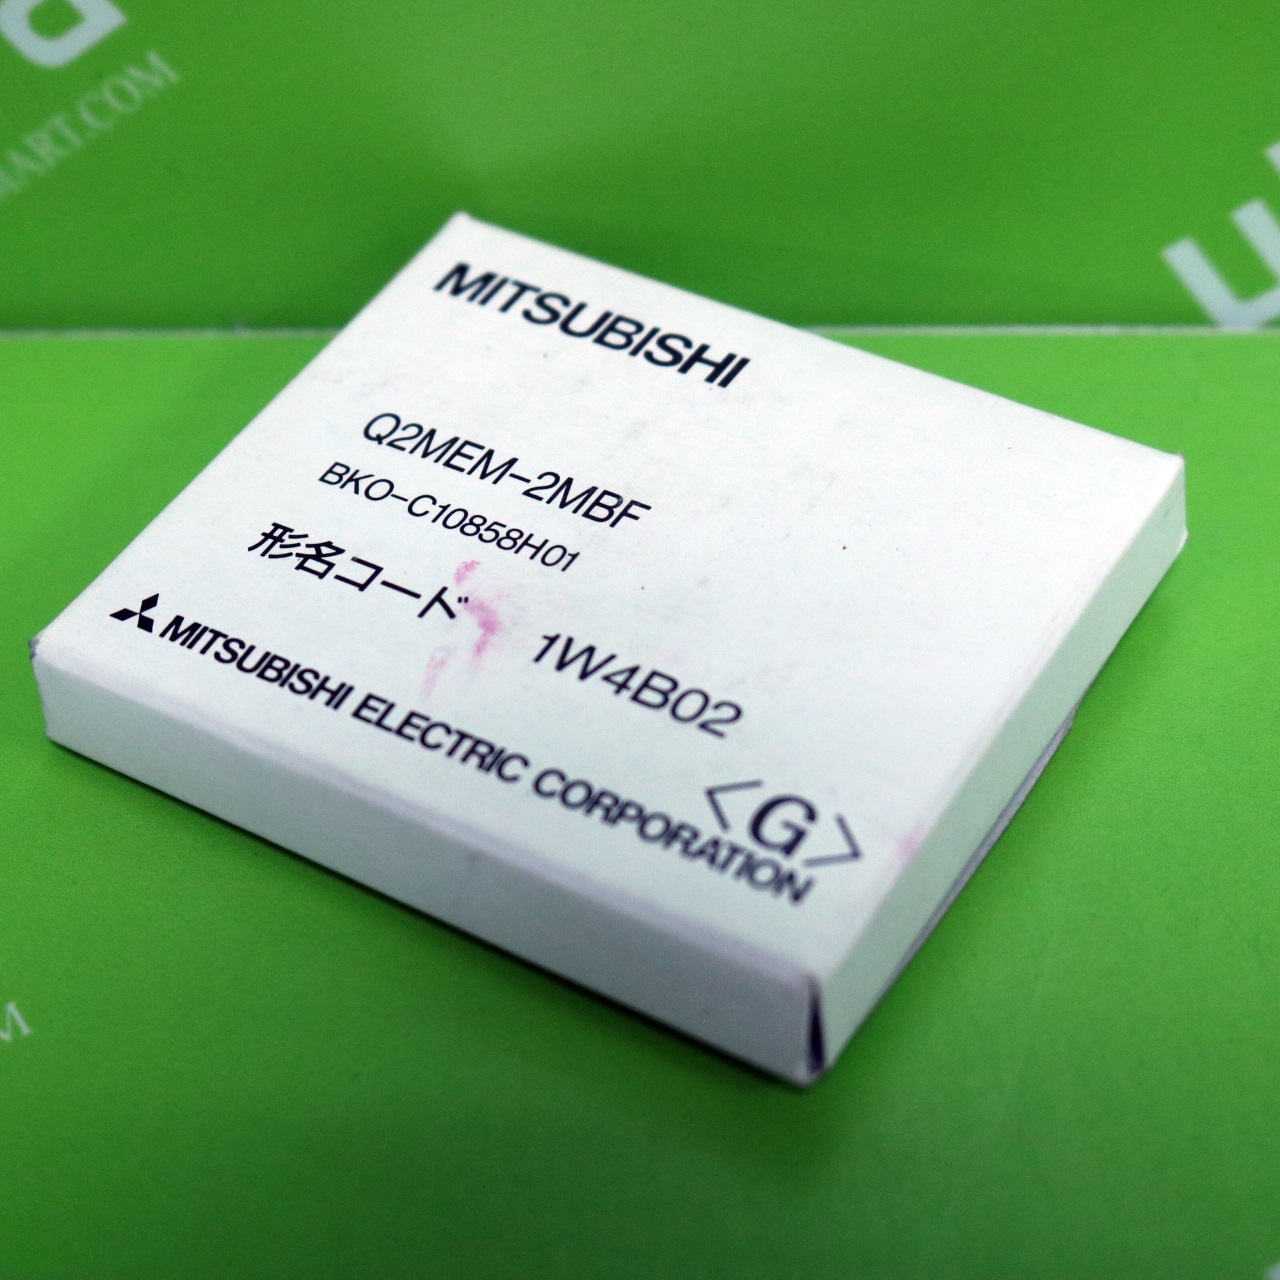 [신품] Q2MEM-2MBF 미쯔비시 메모리카드 2M (소형 리니어 플래시 카드)